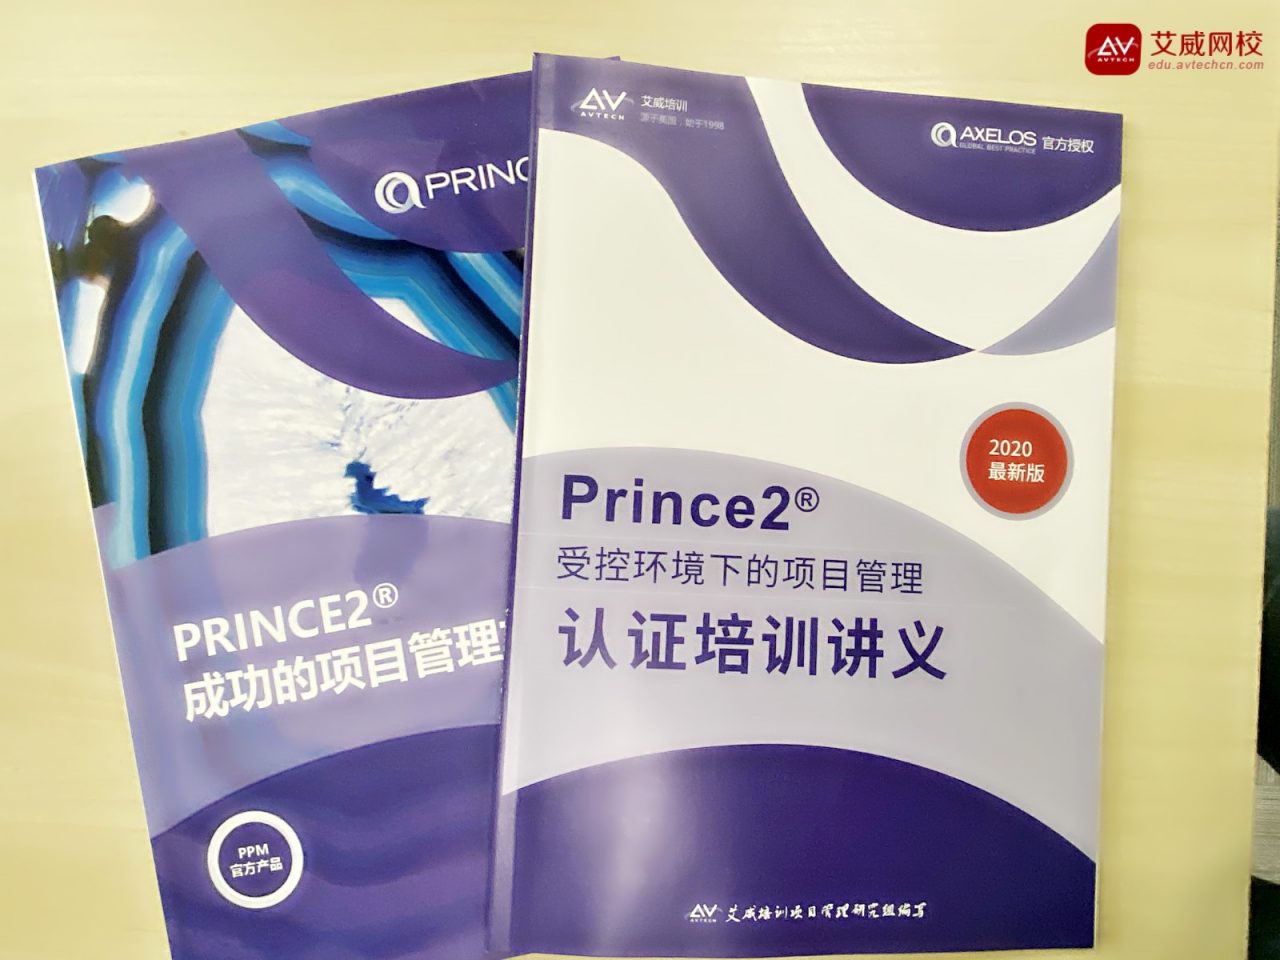 第 58期 PRINCE 2 认证课程成功开班！